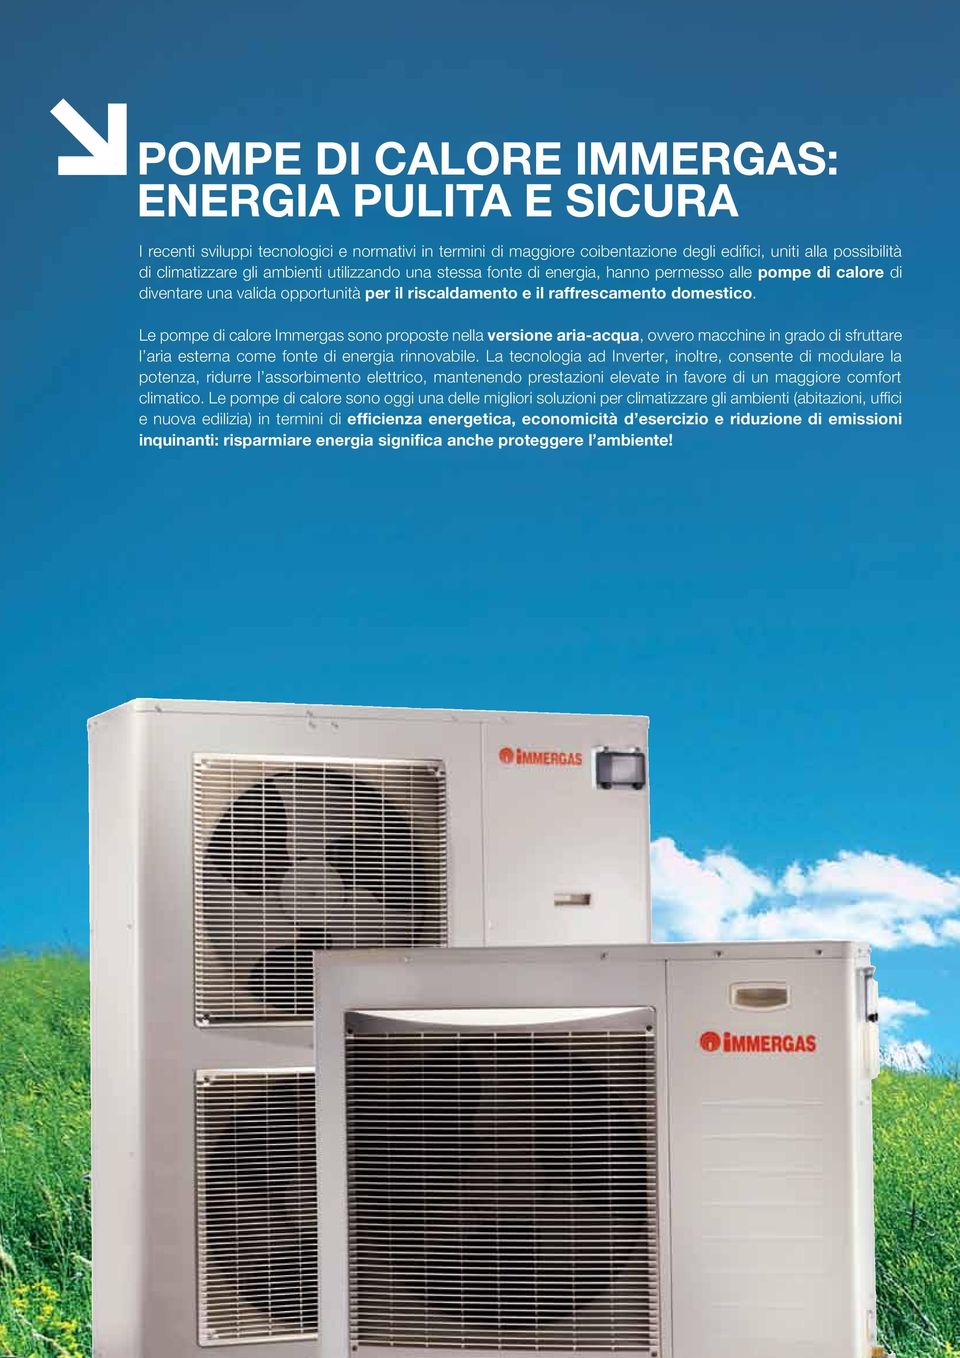 Le pompe di calore Immergas sono proposte nella versione aria-acqua, ovvero macchine in grado di sfruttare l aria esterna come fonte di energia rinnovabile.